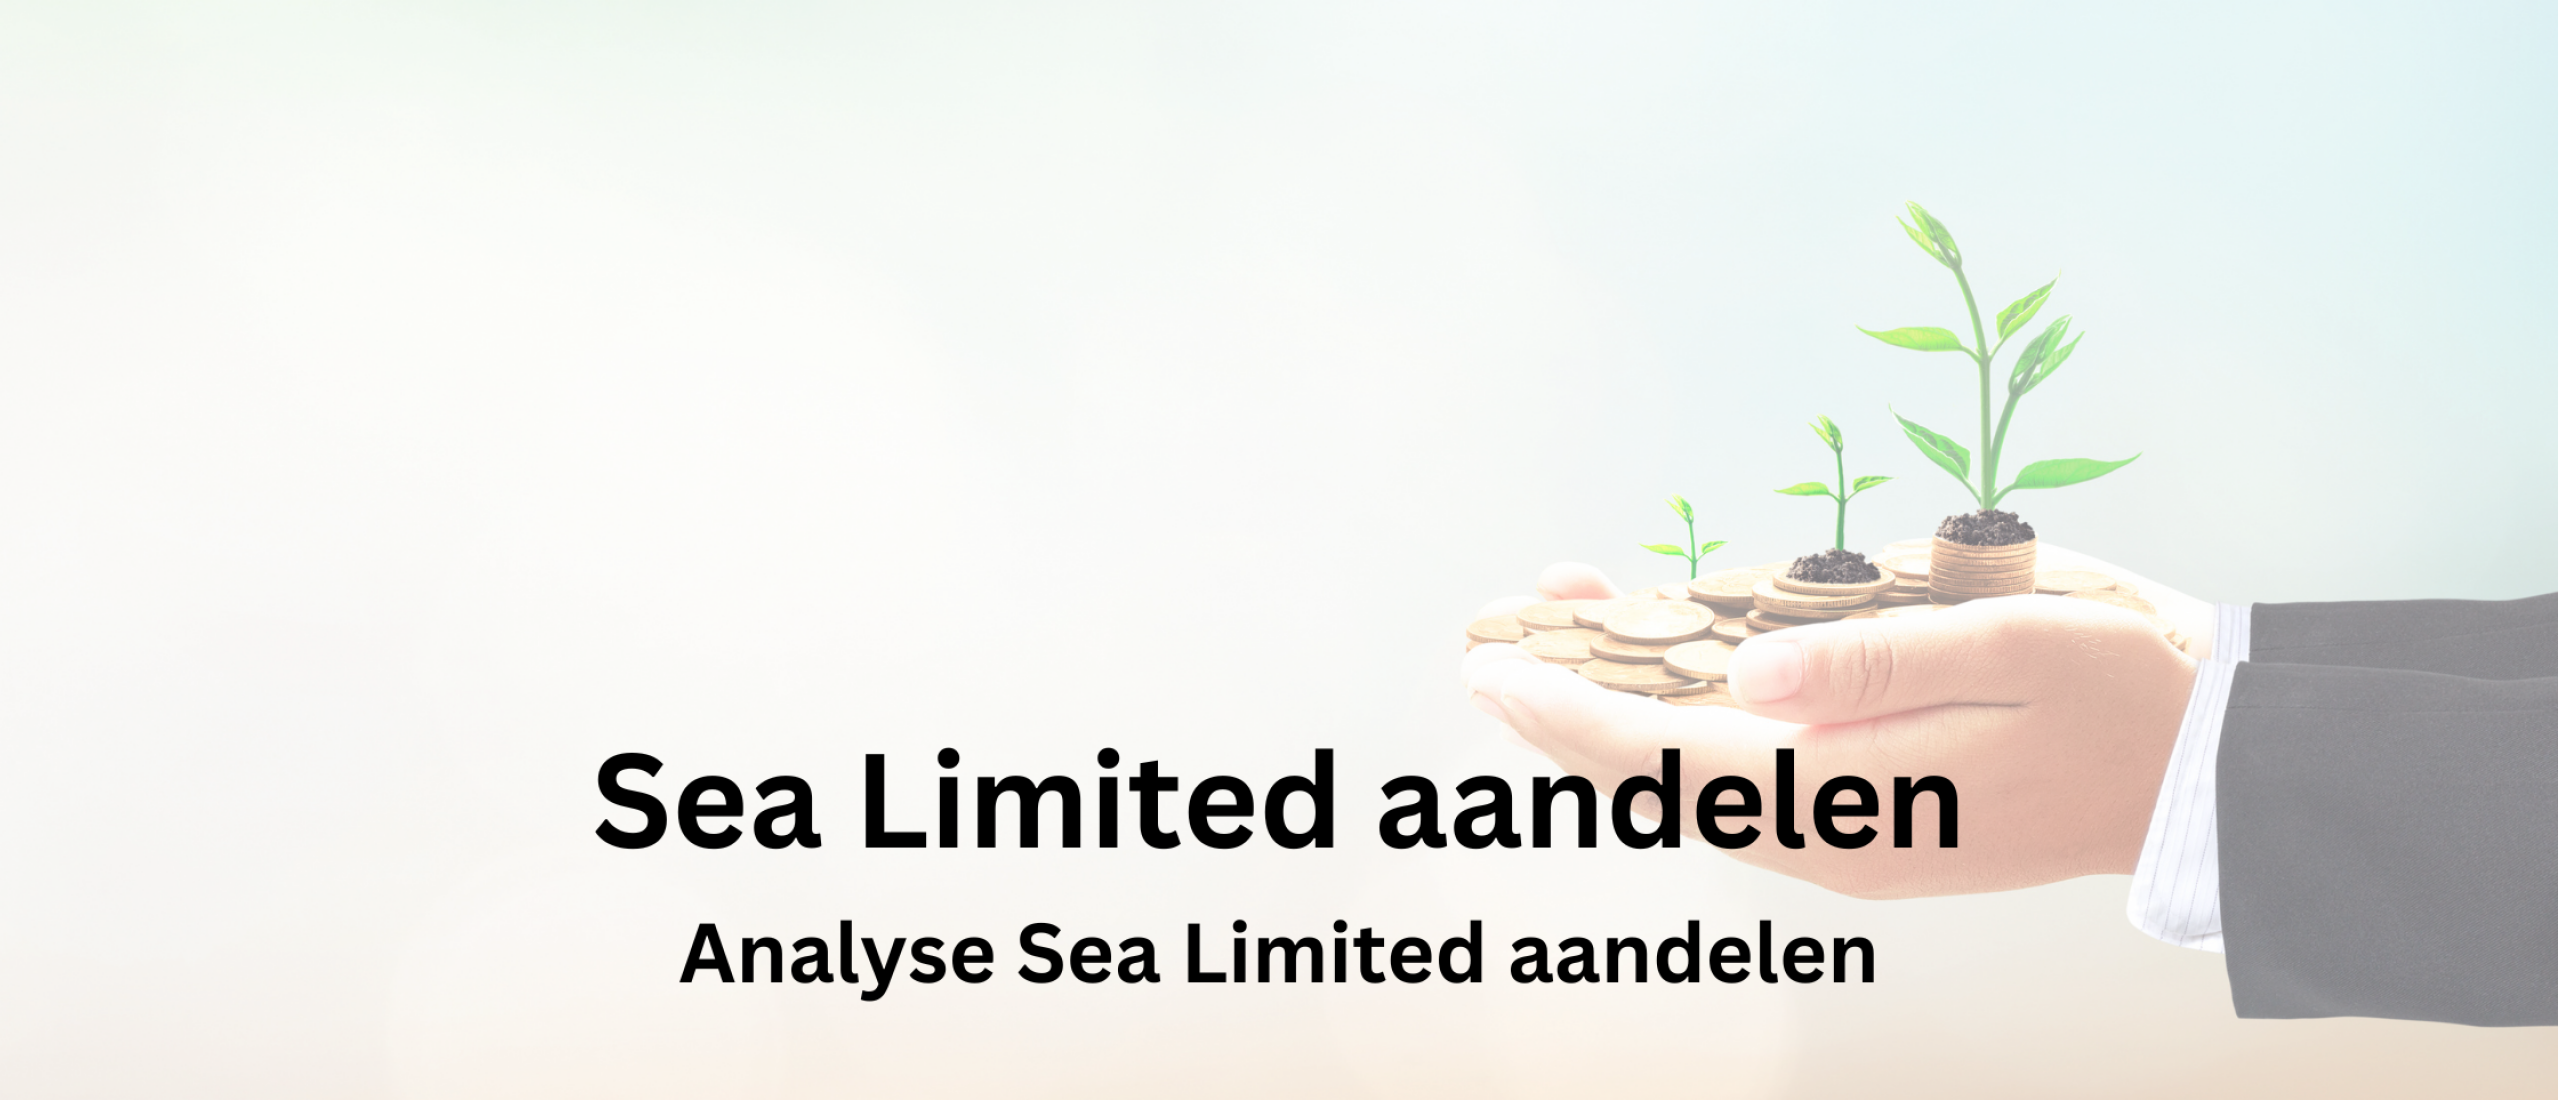 sea-limited-